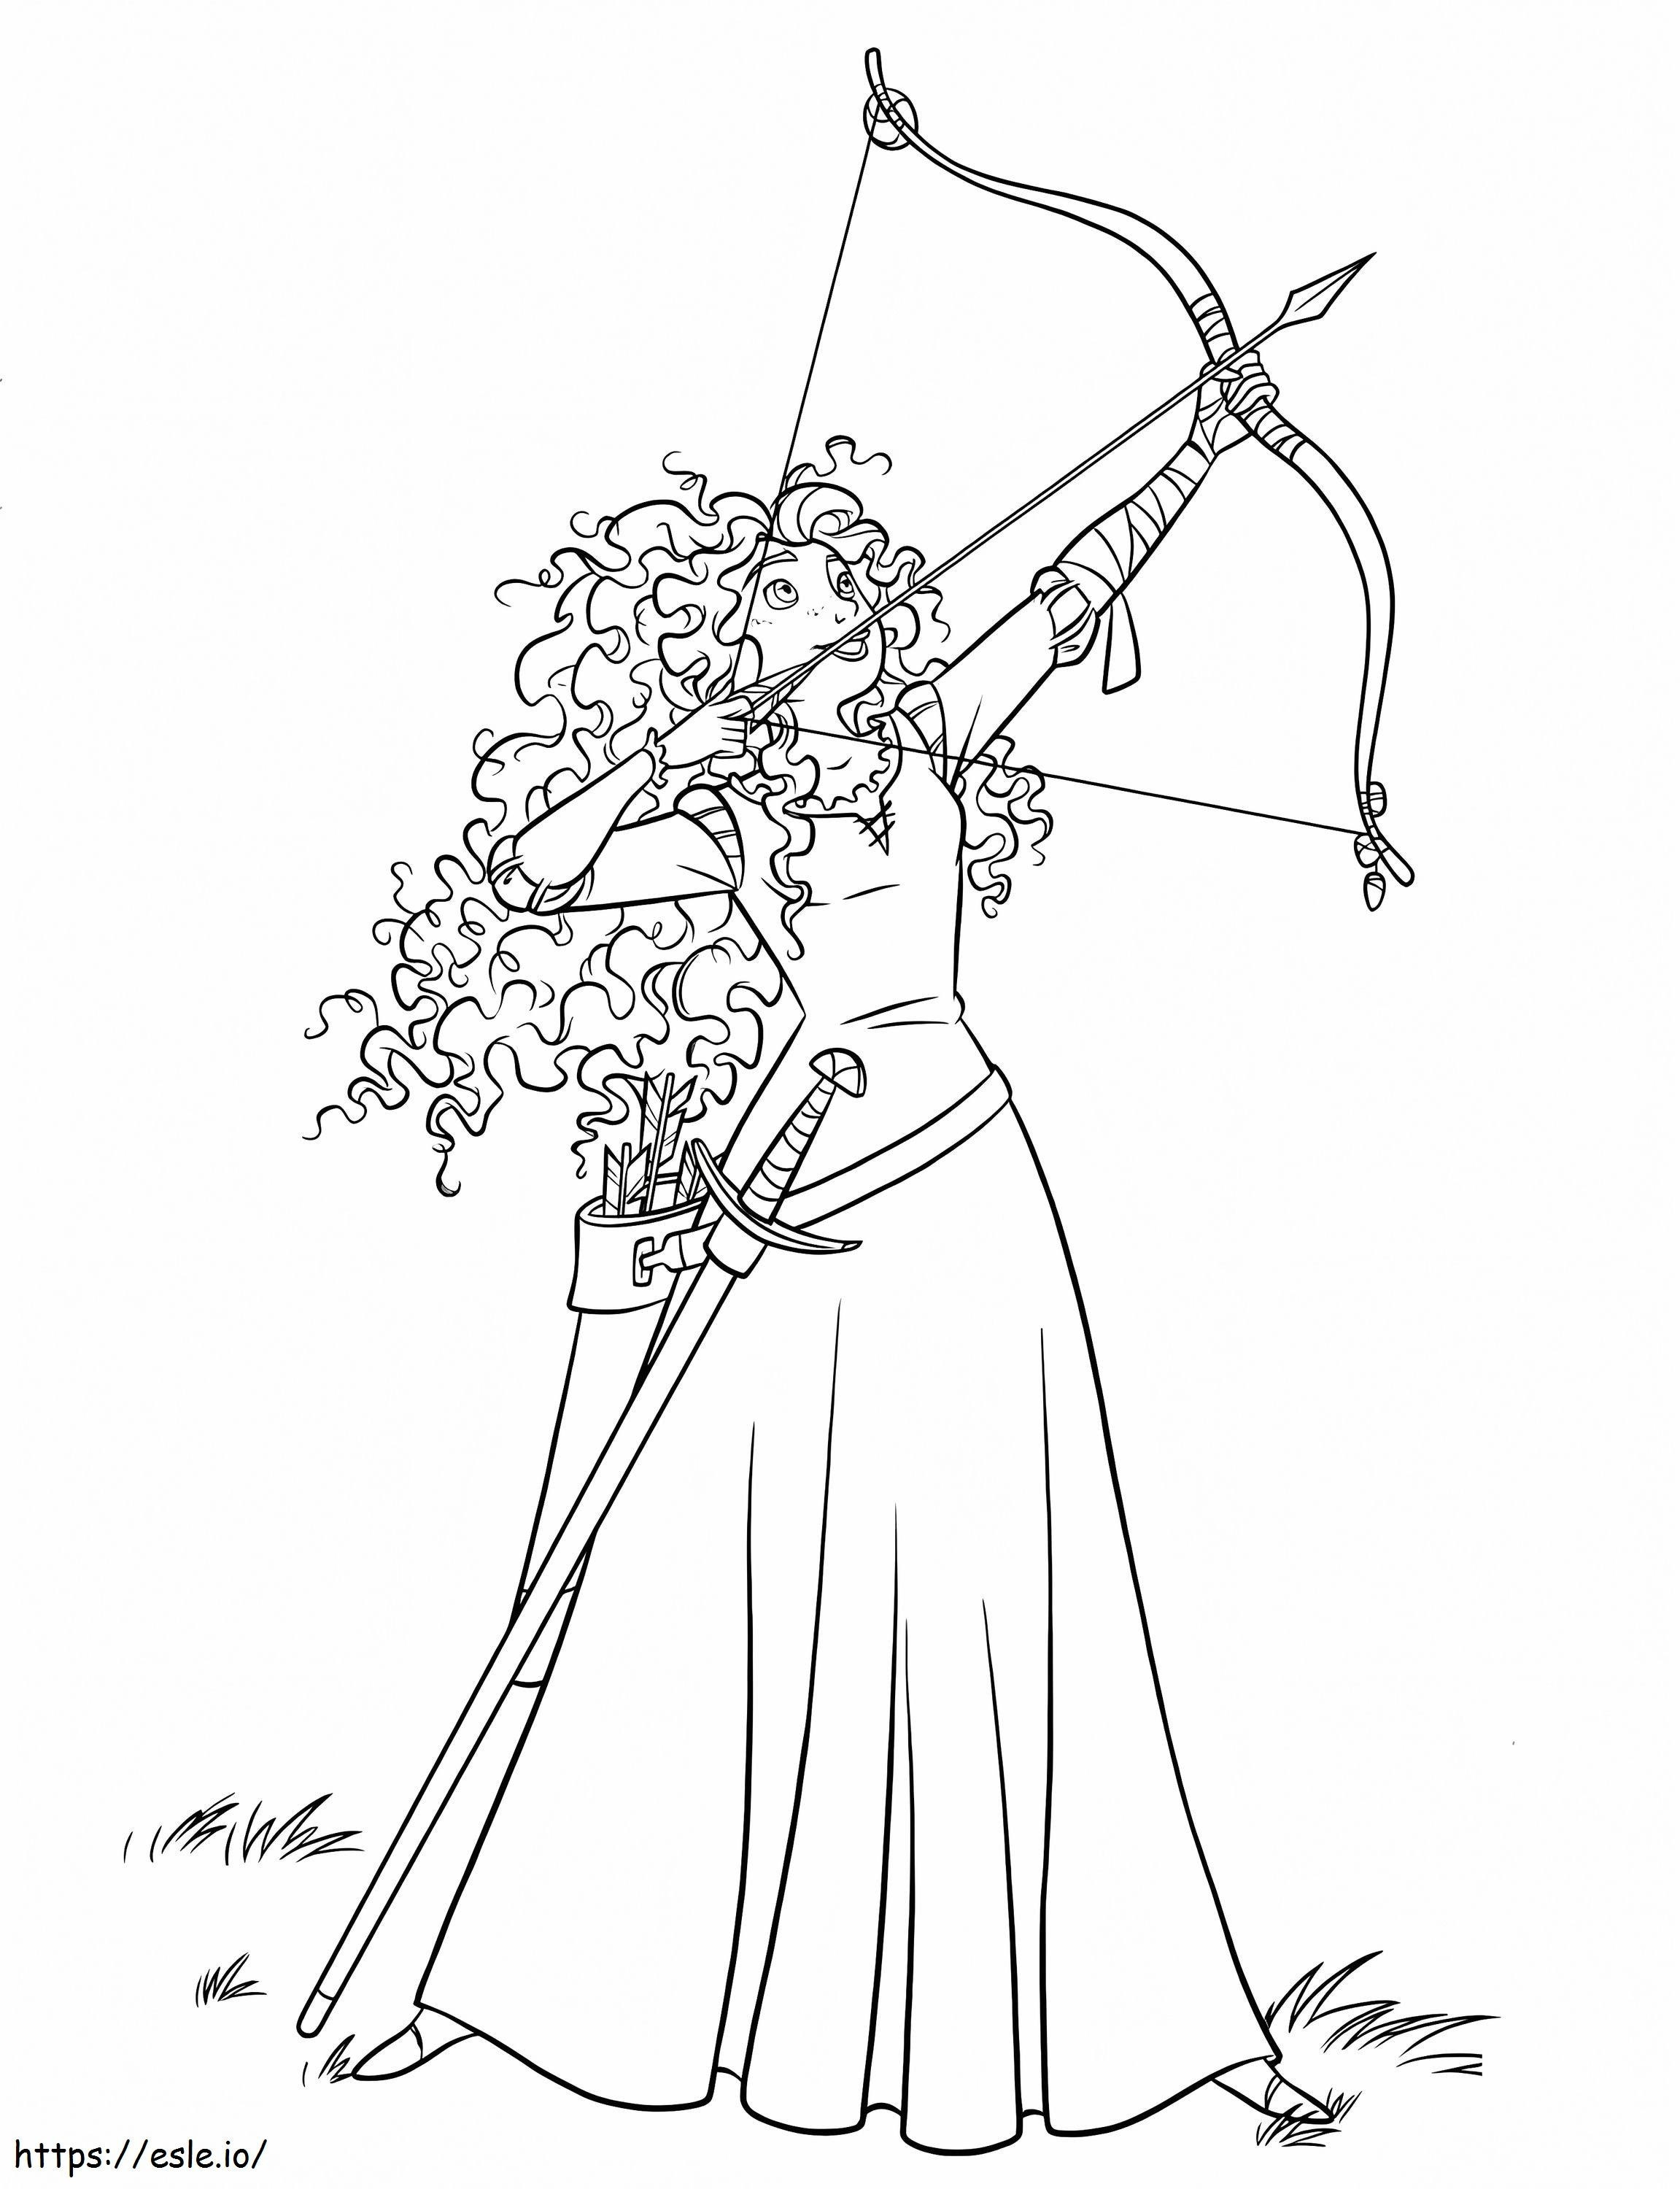 Coloriage Princesse Merida avec arc et flèche 2 à imprimer dessin